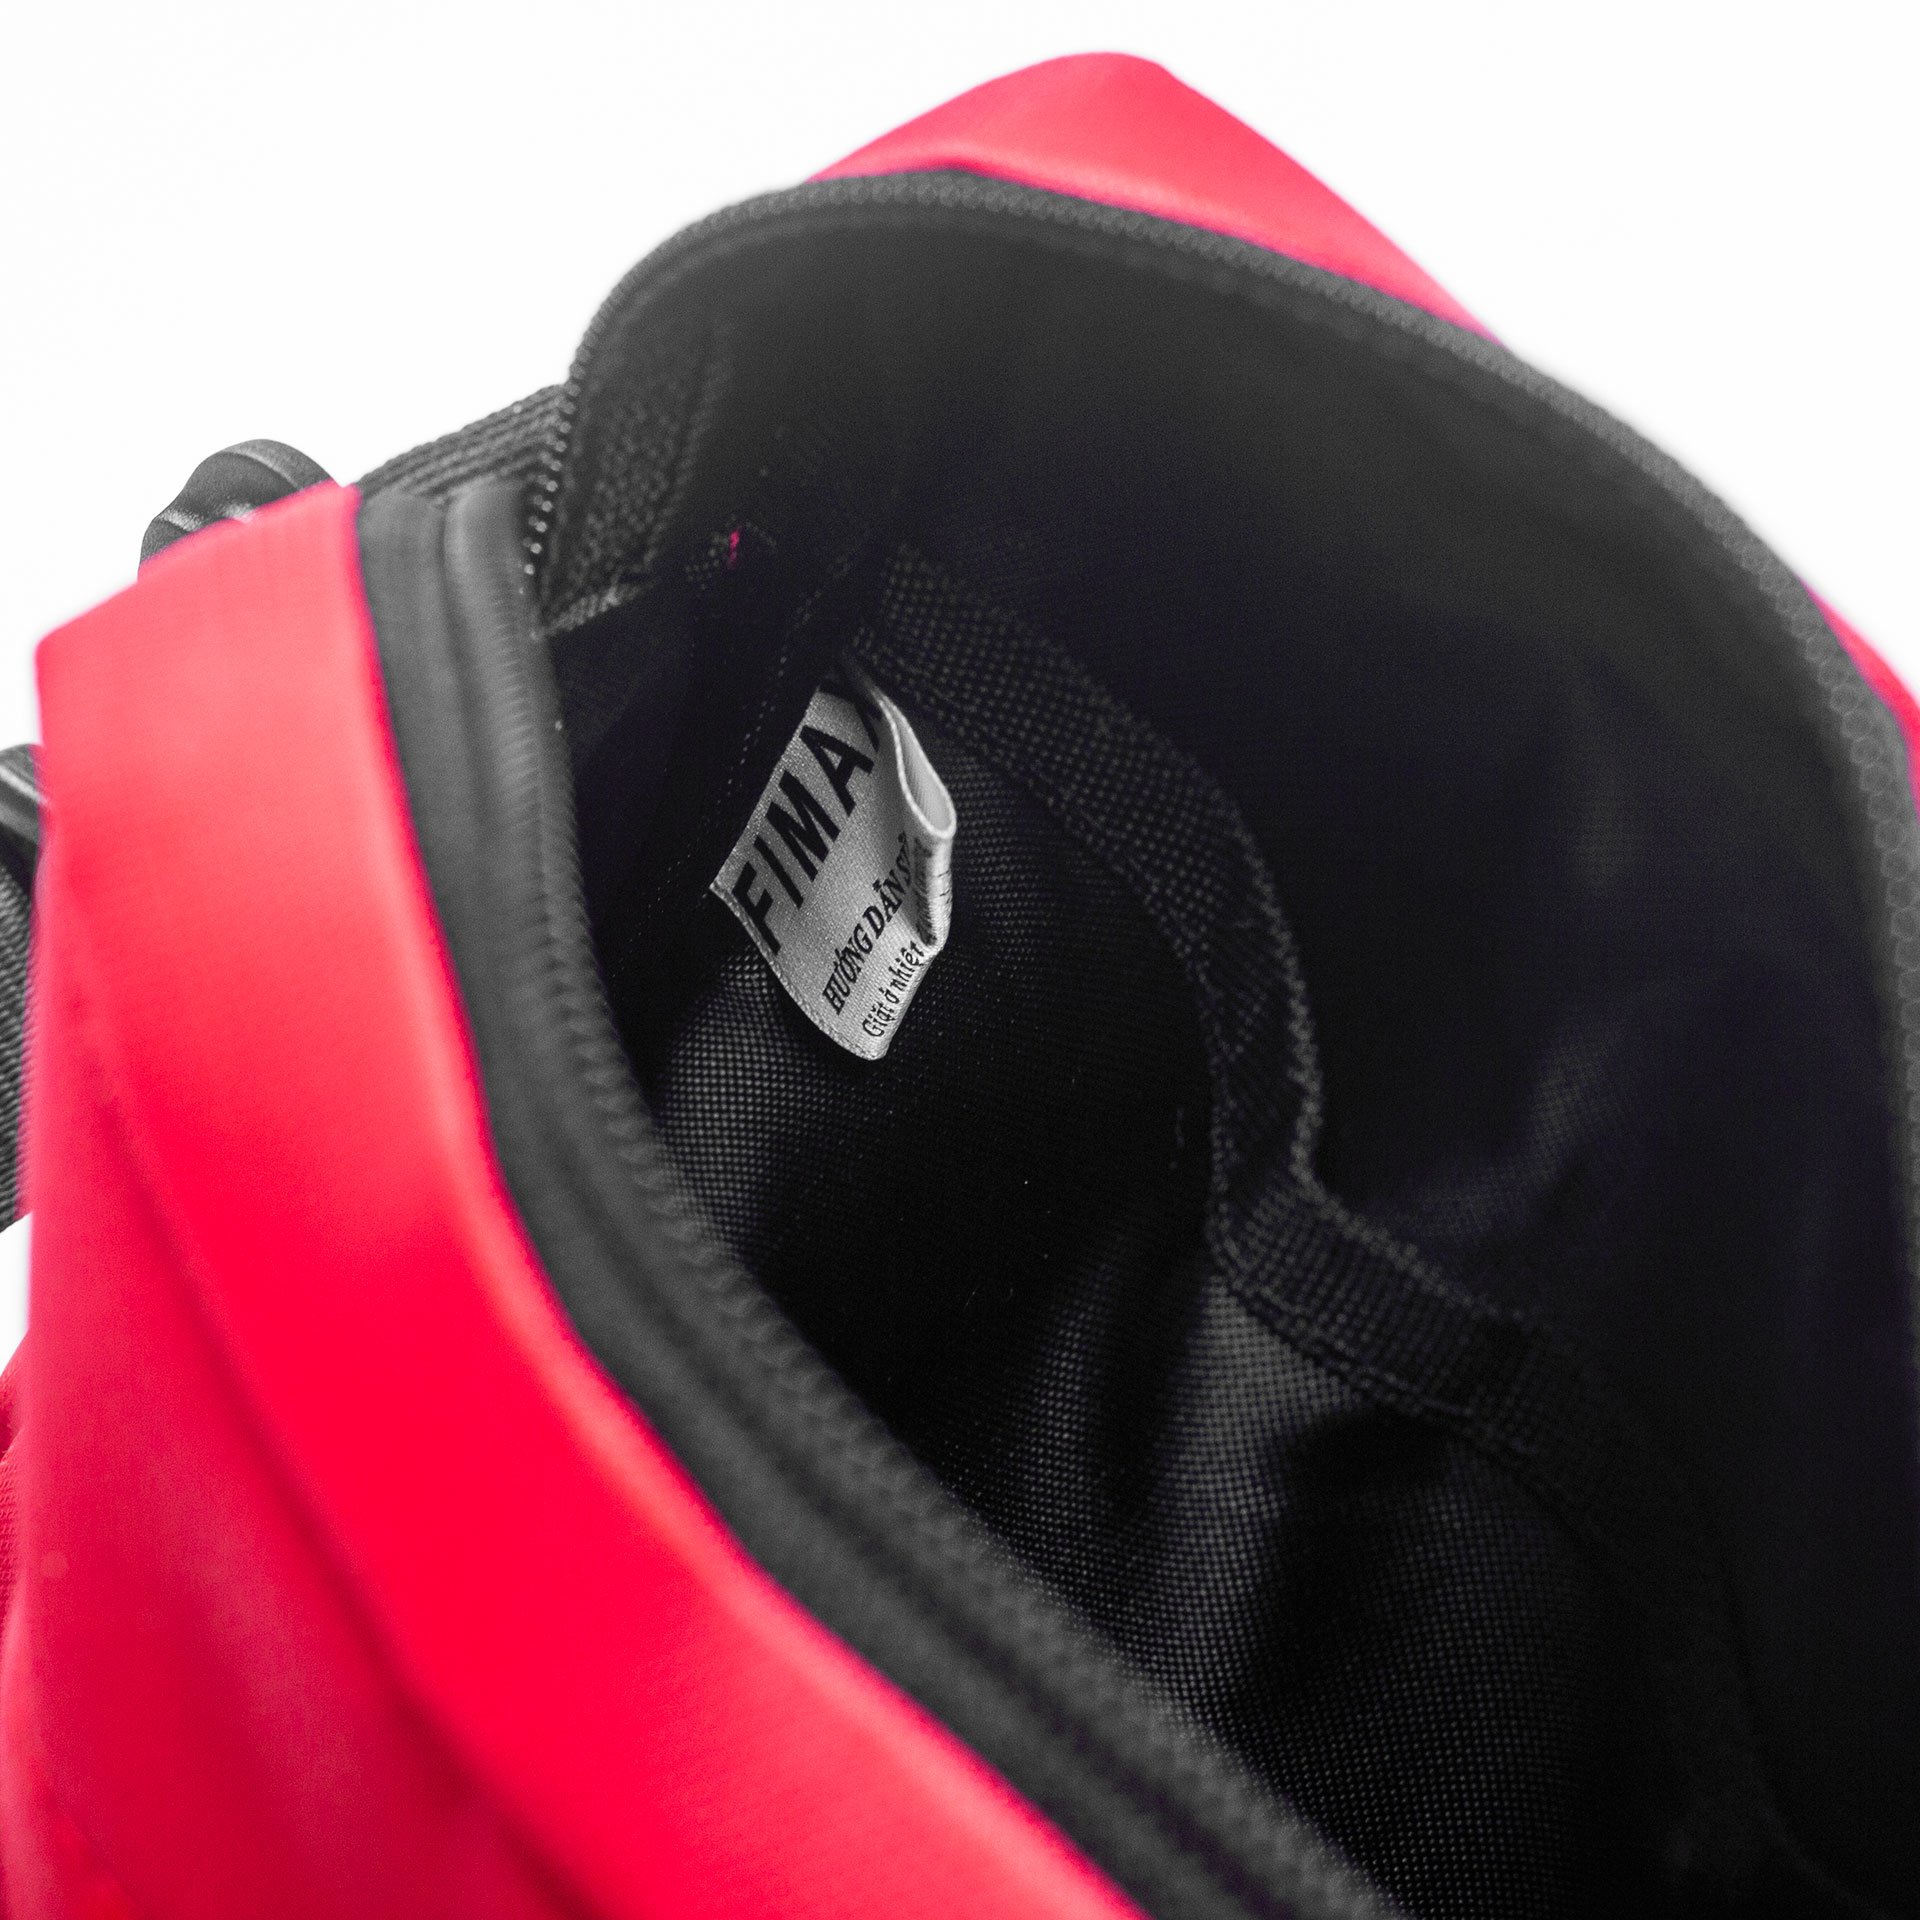 Túi đeo mini unisex cá tính Fimax cho nam nữ, túi đeo chéo nhỏ gọn với kích thước 17x15x5cm làm từ vải chống nước dùng đựng điện thoại và phụ kiện cá nhân khi đi chơi dự tiệc